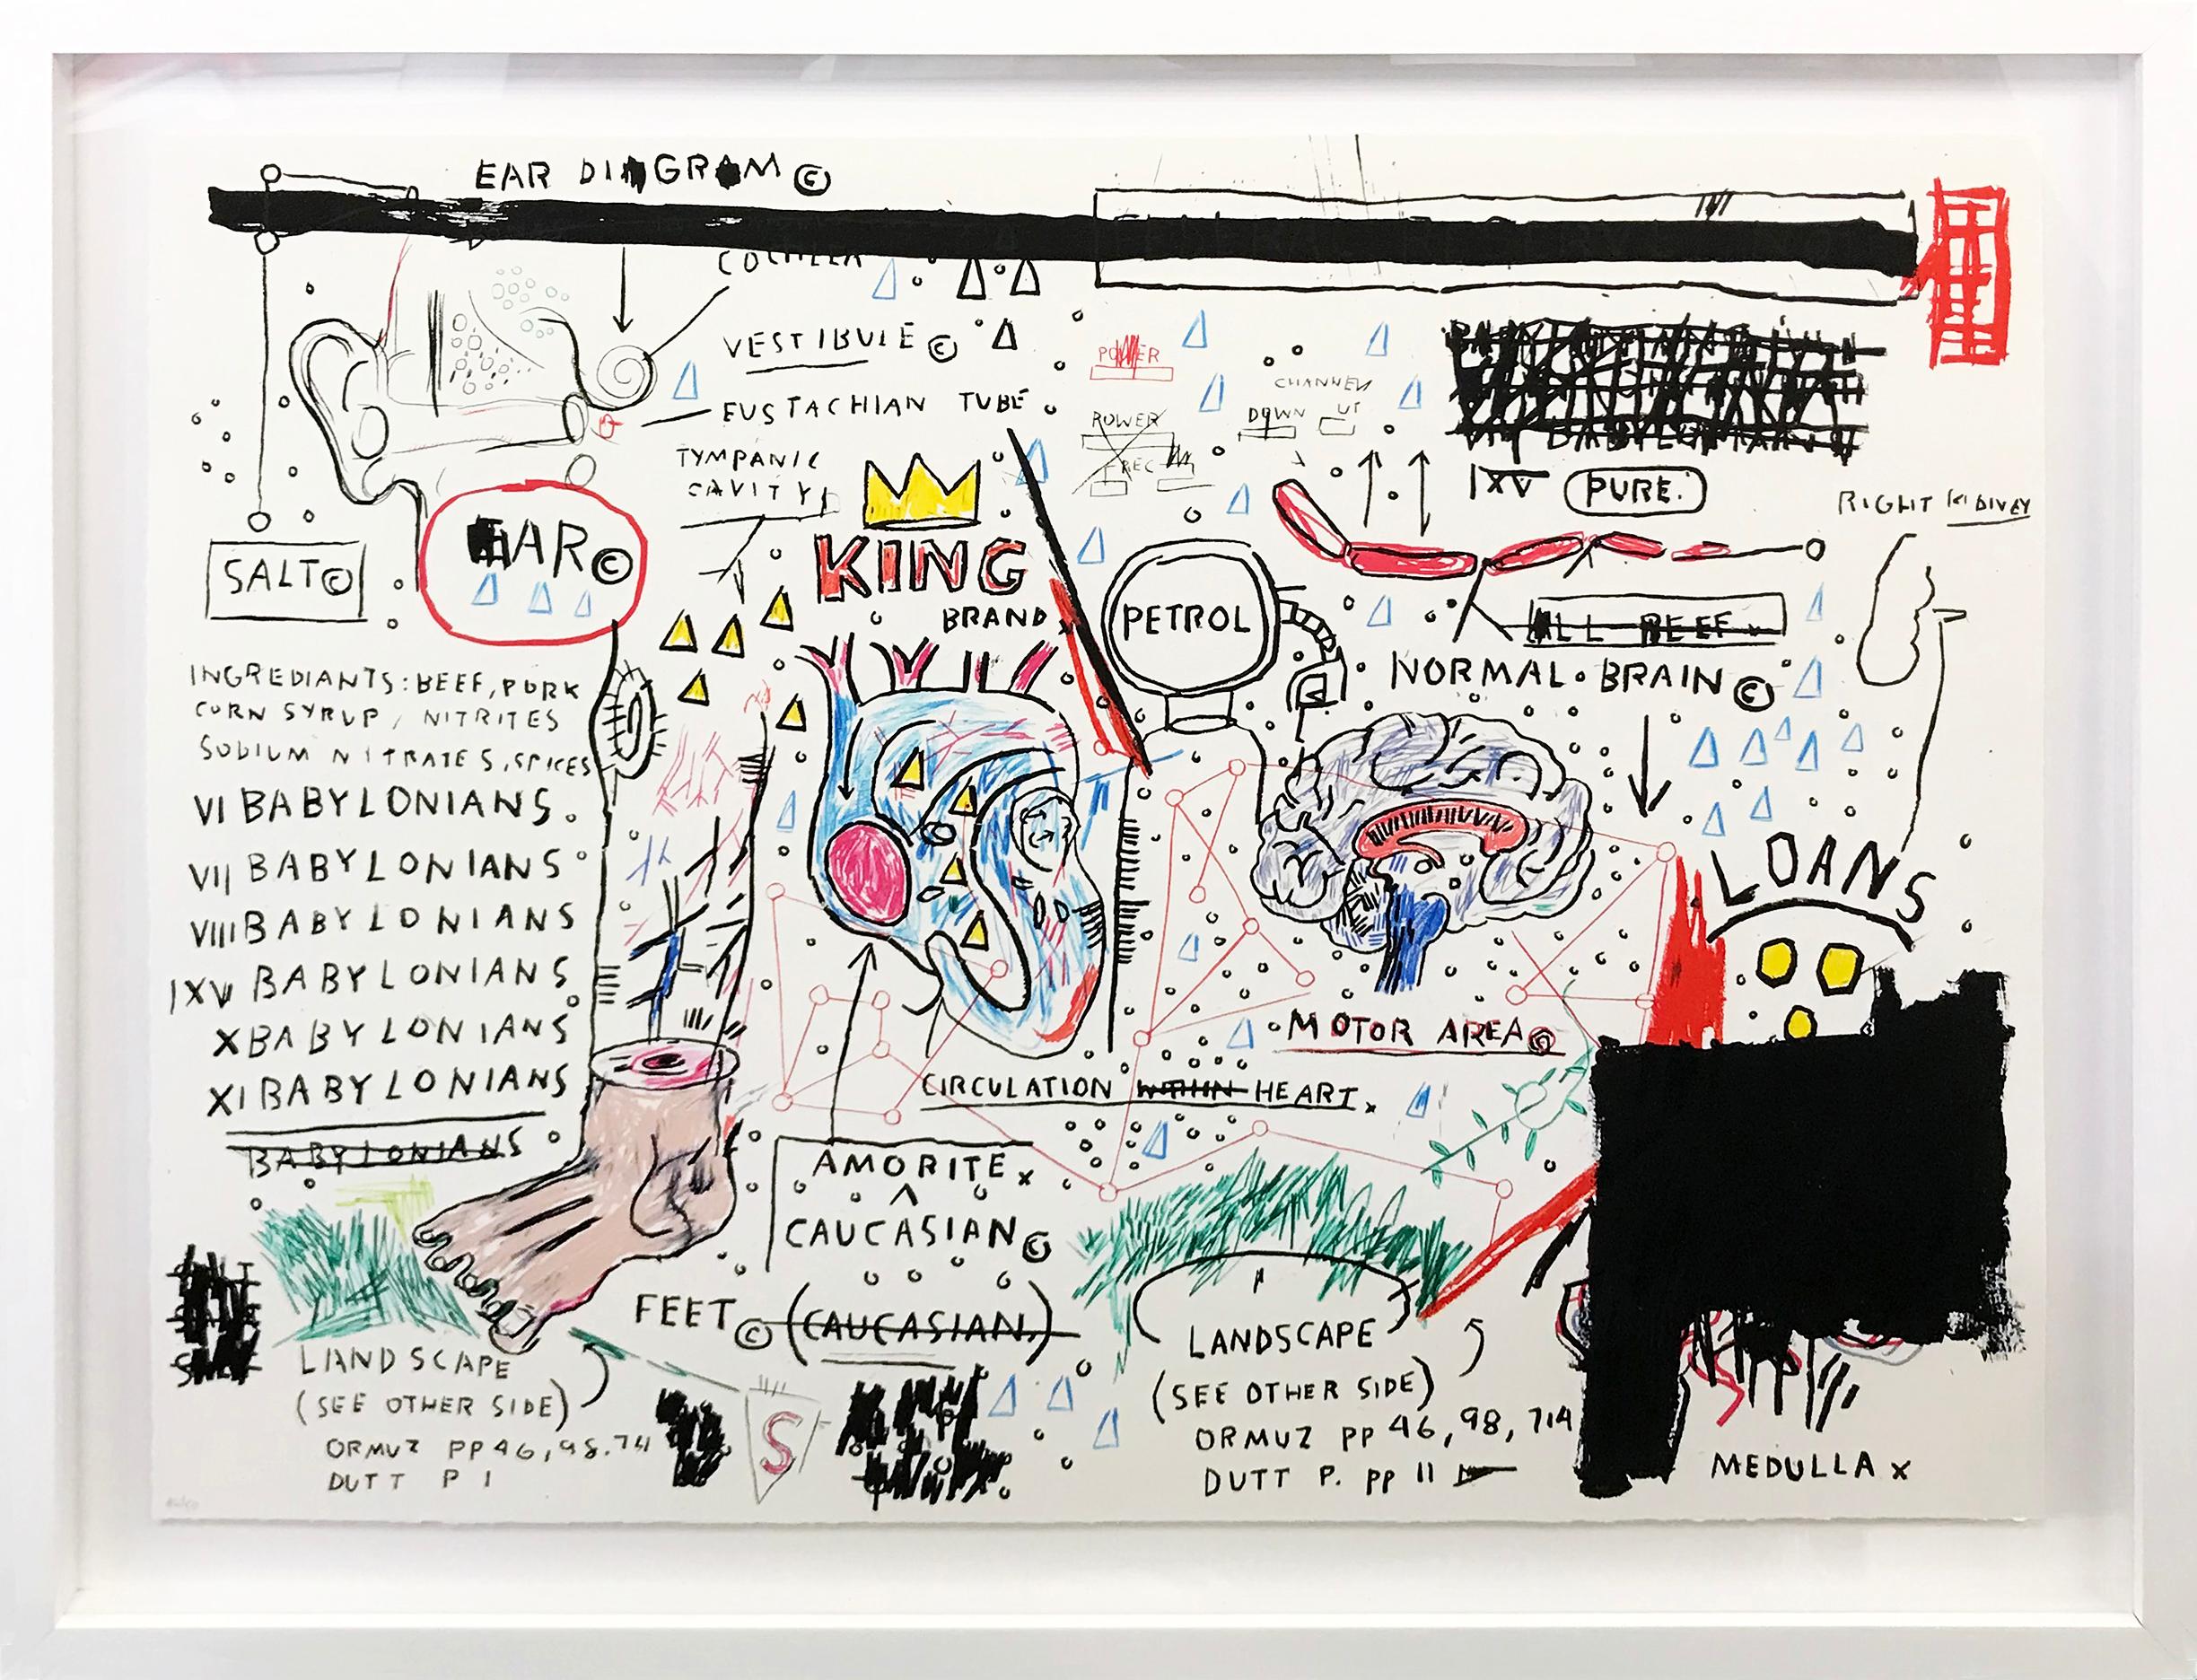 PORTFOLIO DE LA SAUCISSE DU LOUP, DE LA MARQUE DU ROI, DE L'ÉTUDE DE LA PATTE DE CHIEN ET DES GÉNIES NON DÉCOUVERTS - Art urbain Print par Jean-Michel Basquiat